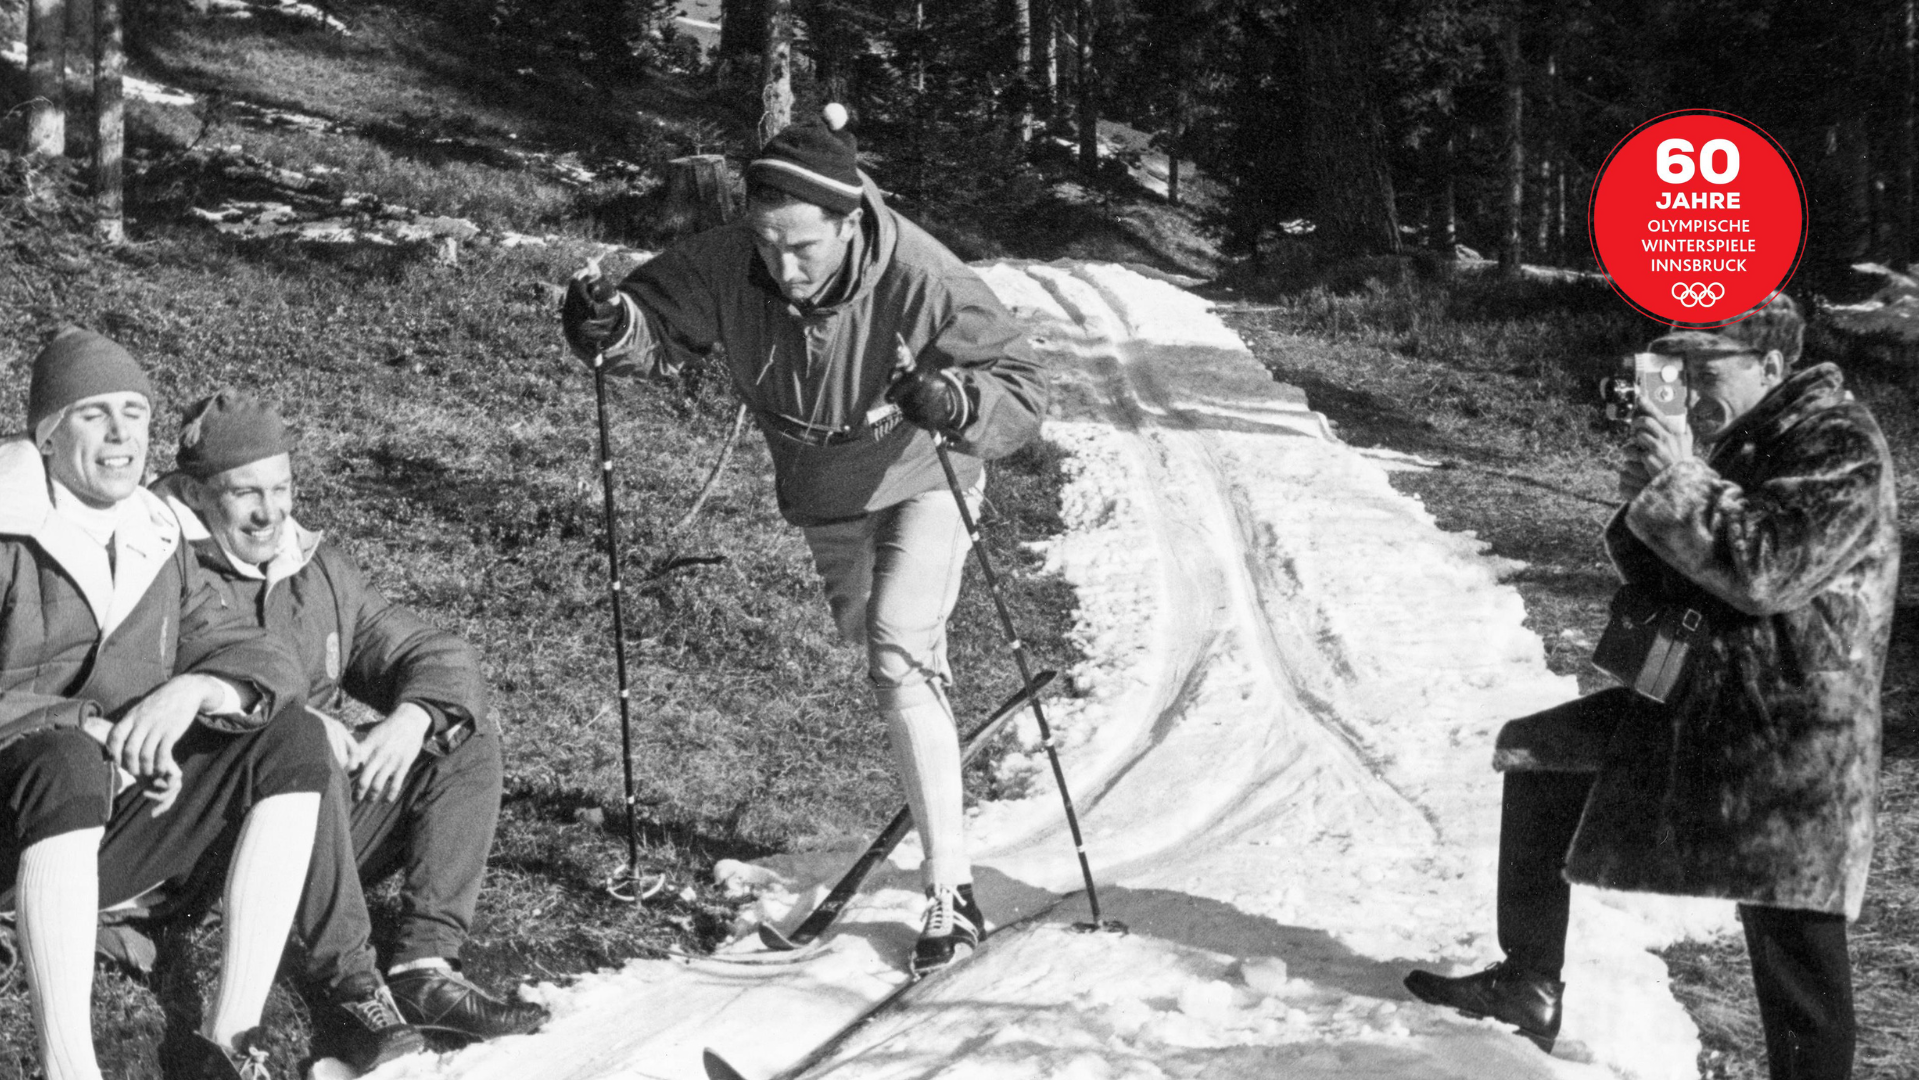 Auf schmalen Schneebändern durch die Wälder fanden die Olympia-Langlaufbewerbe statt. (Bild: Votava)